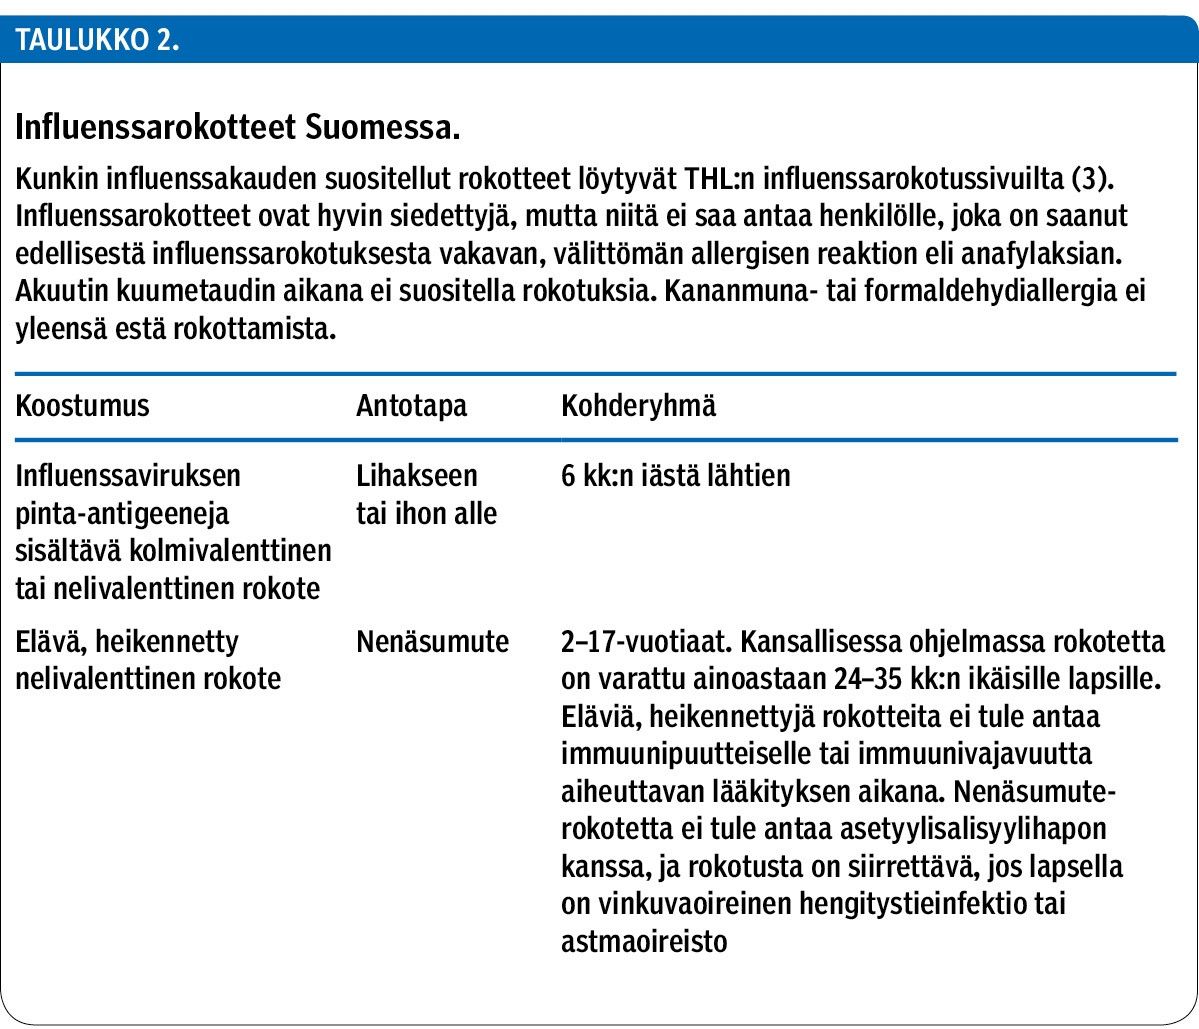 Influenssarokotteet Suomessa.